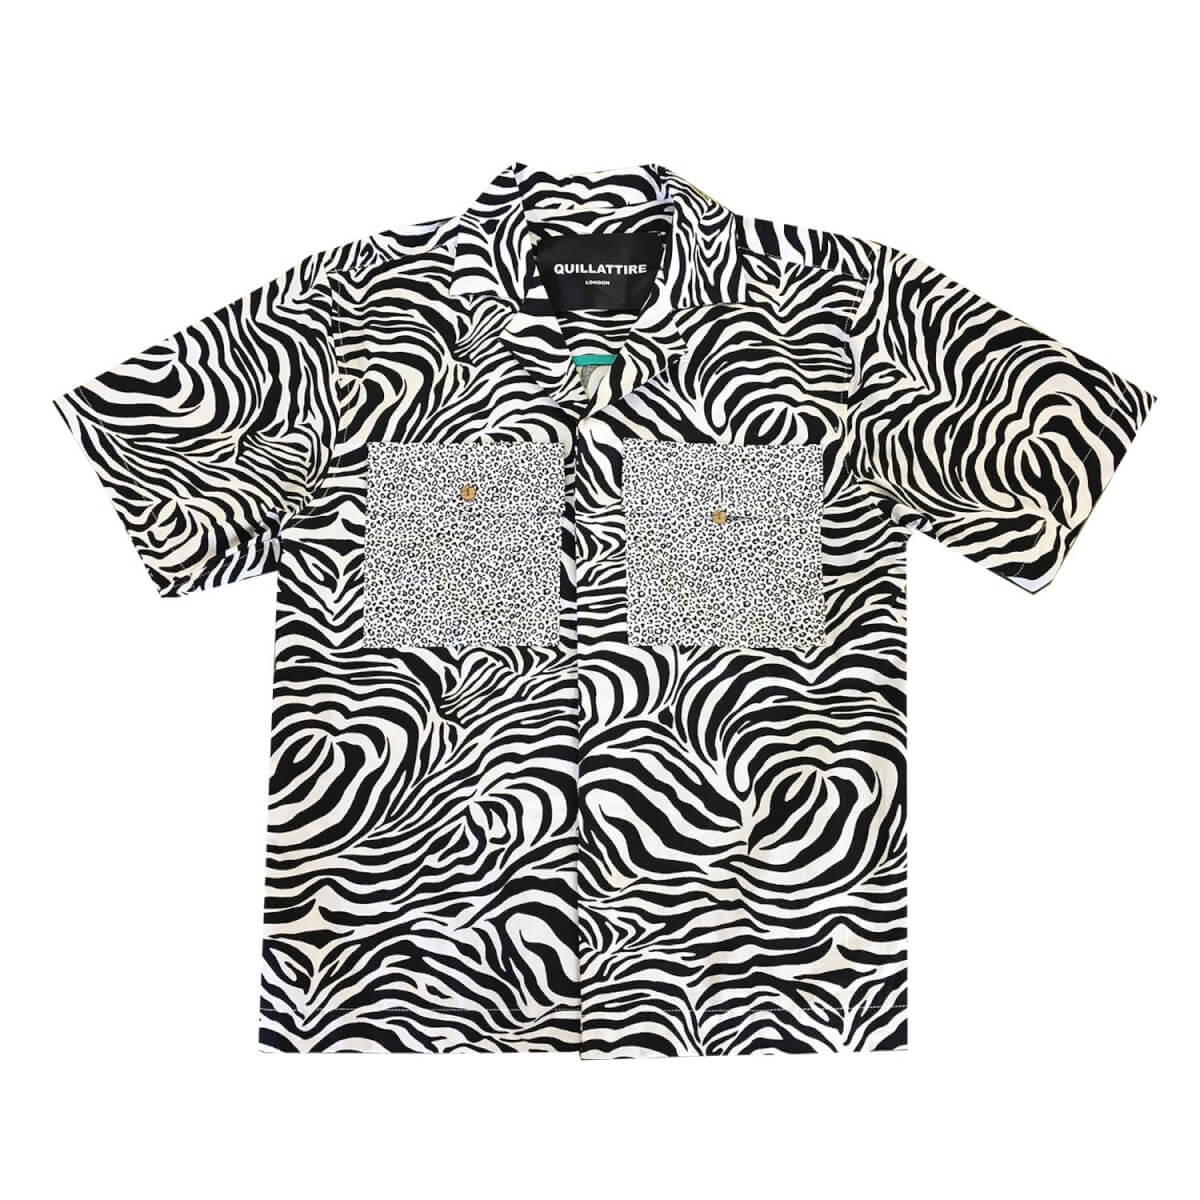 Men's Black / White Black And White Zebra Print Shirt Small Quillattire